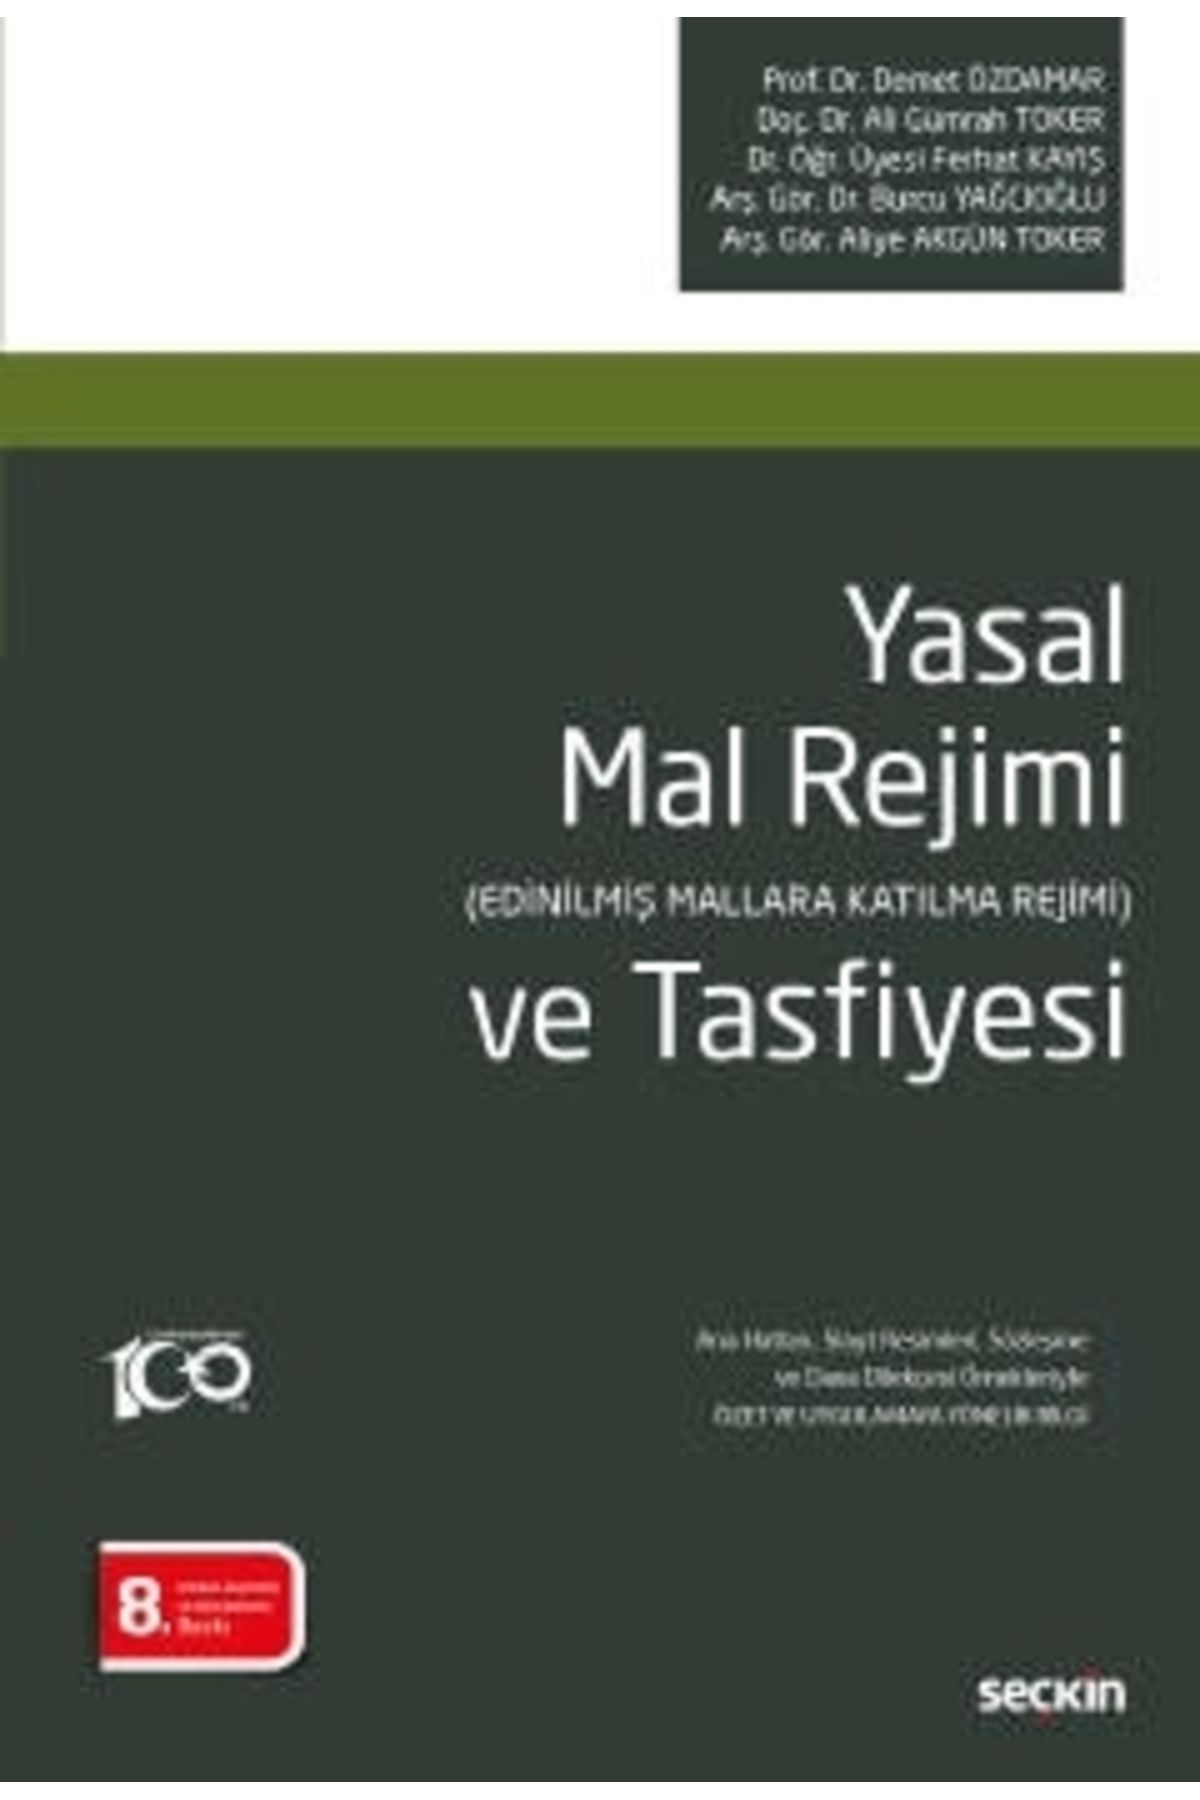 Seçkin Yayıncılık Yasal Mal Rejimi Ve Tasfiyesi Demet Özdamar, Ali Gümrah Toker, Ferhat Kayış,burcu Yağcıoğlu